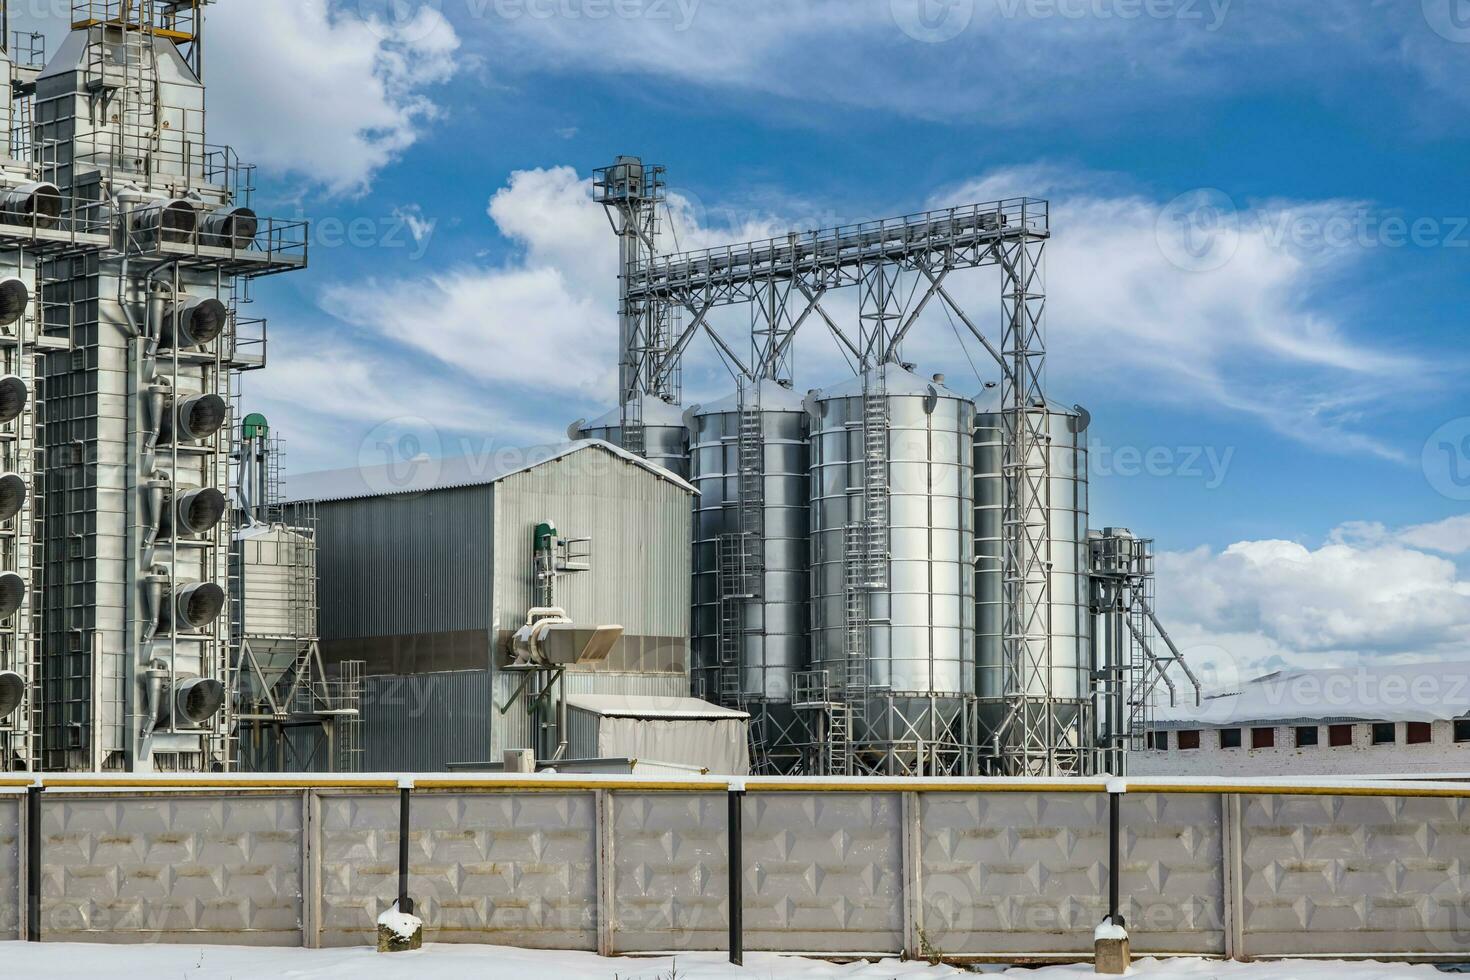 moderno agroprocesamiento planta para Procesando y silos para el secado limpieza y almacenamiento de agrícola productos, harina, cereales y grano en nieve de invierno campo foto